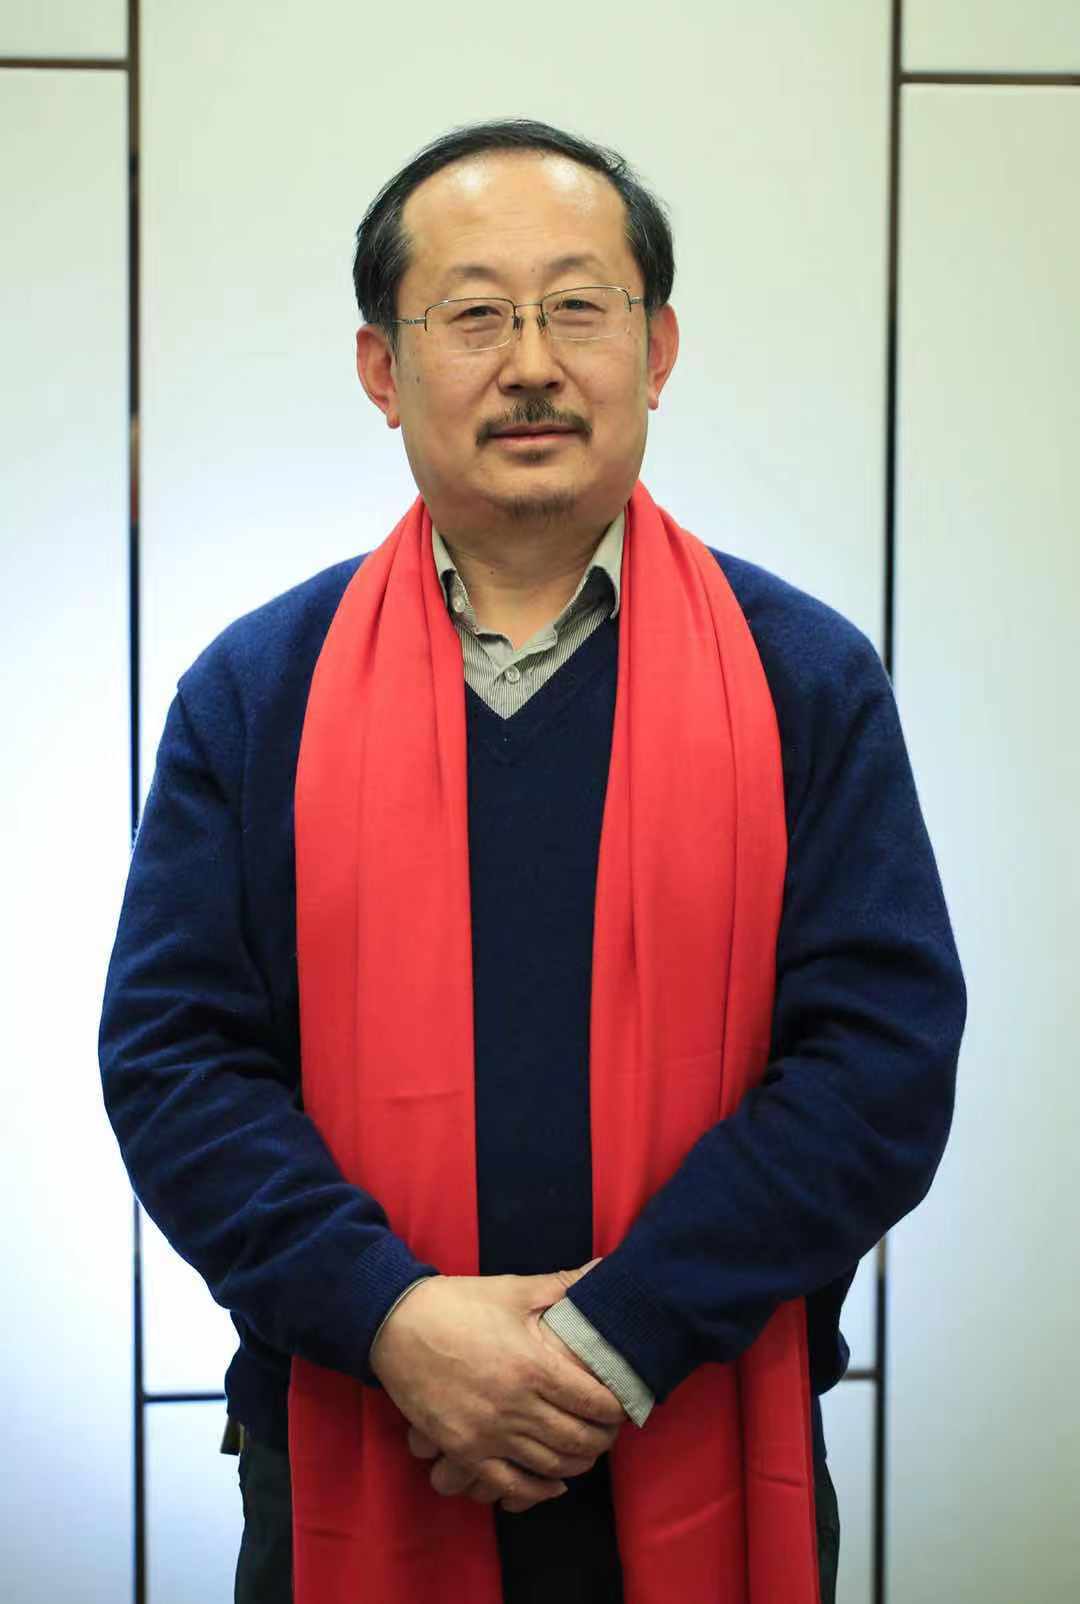 李東風(長春工業大學化學與生命科學學院教授)